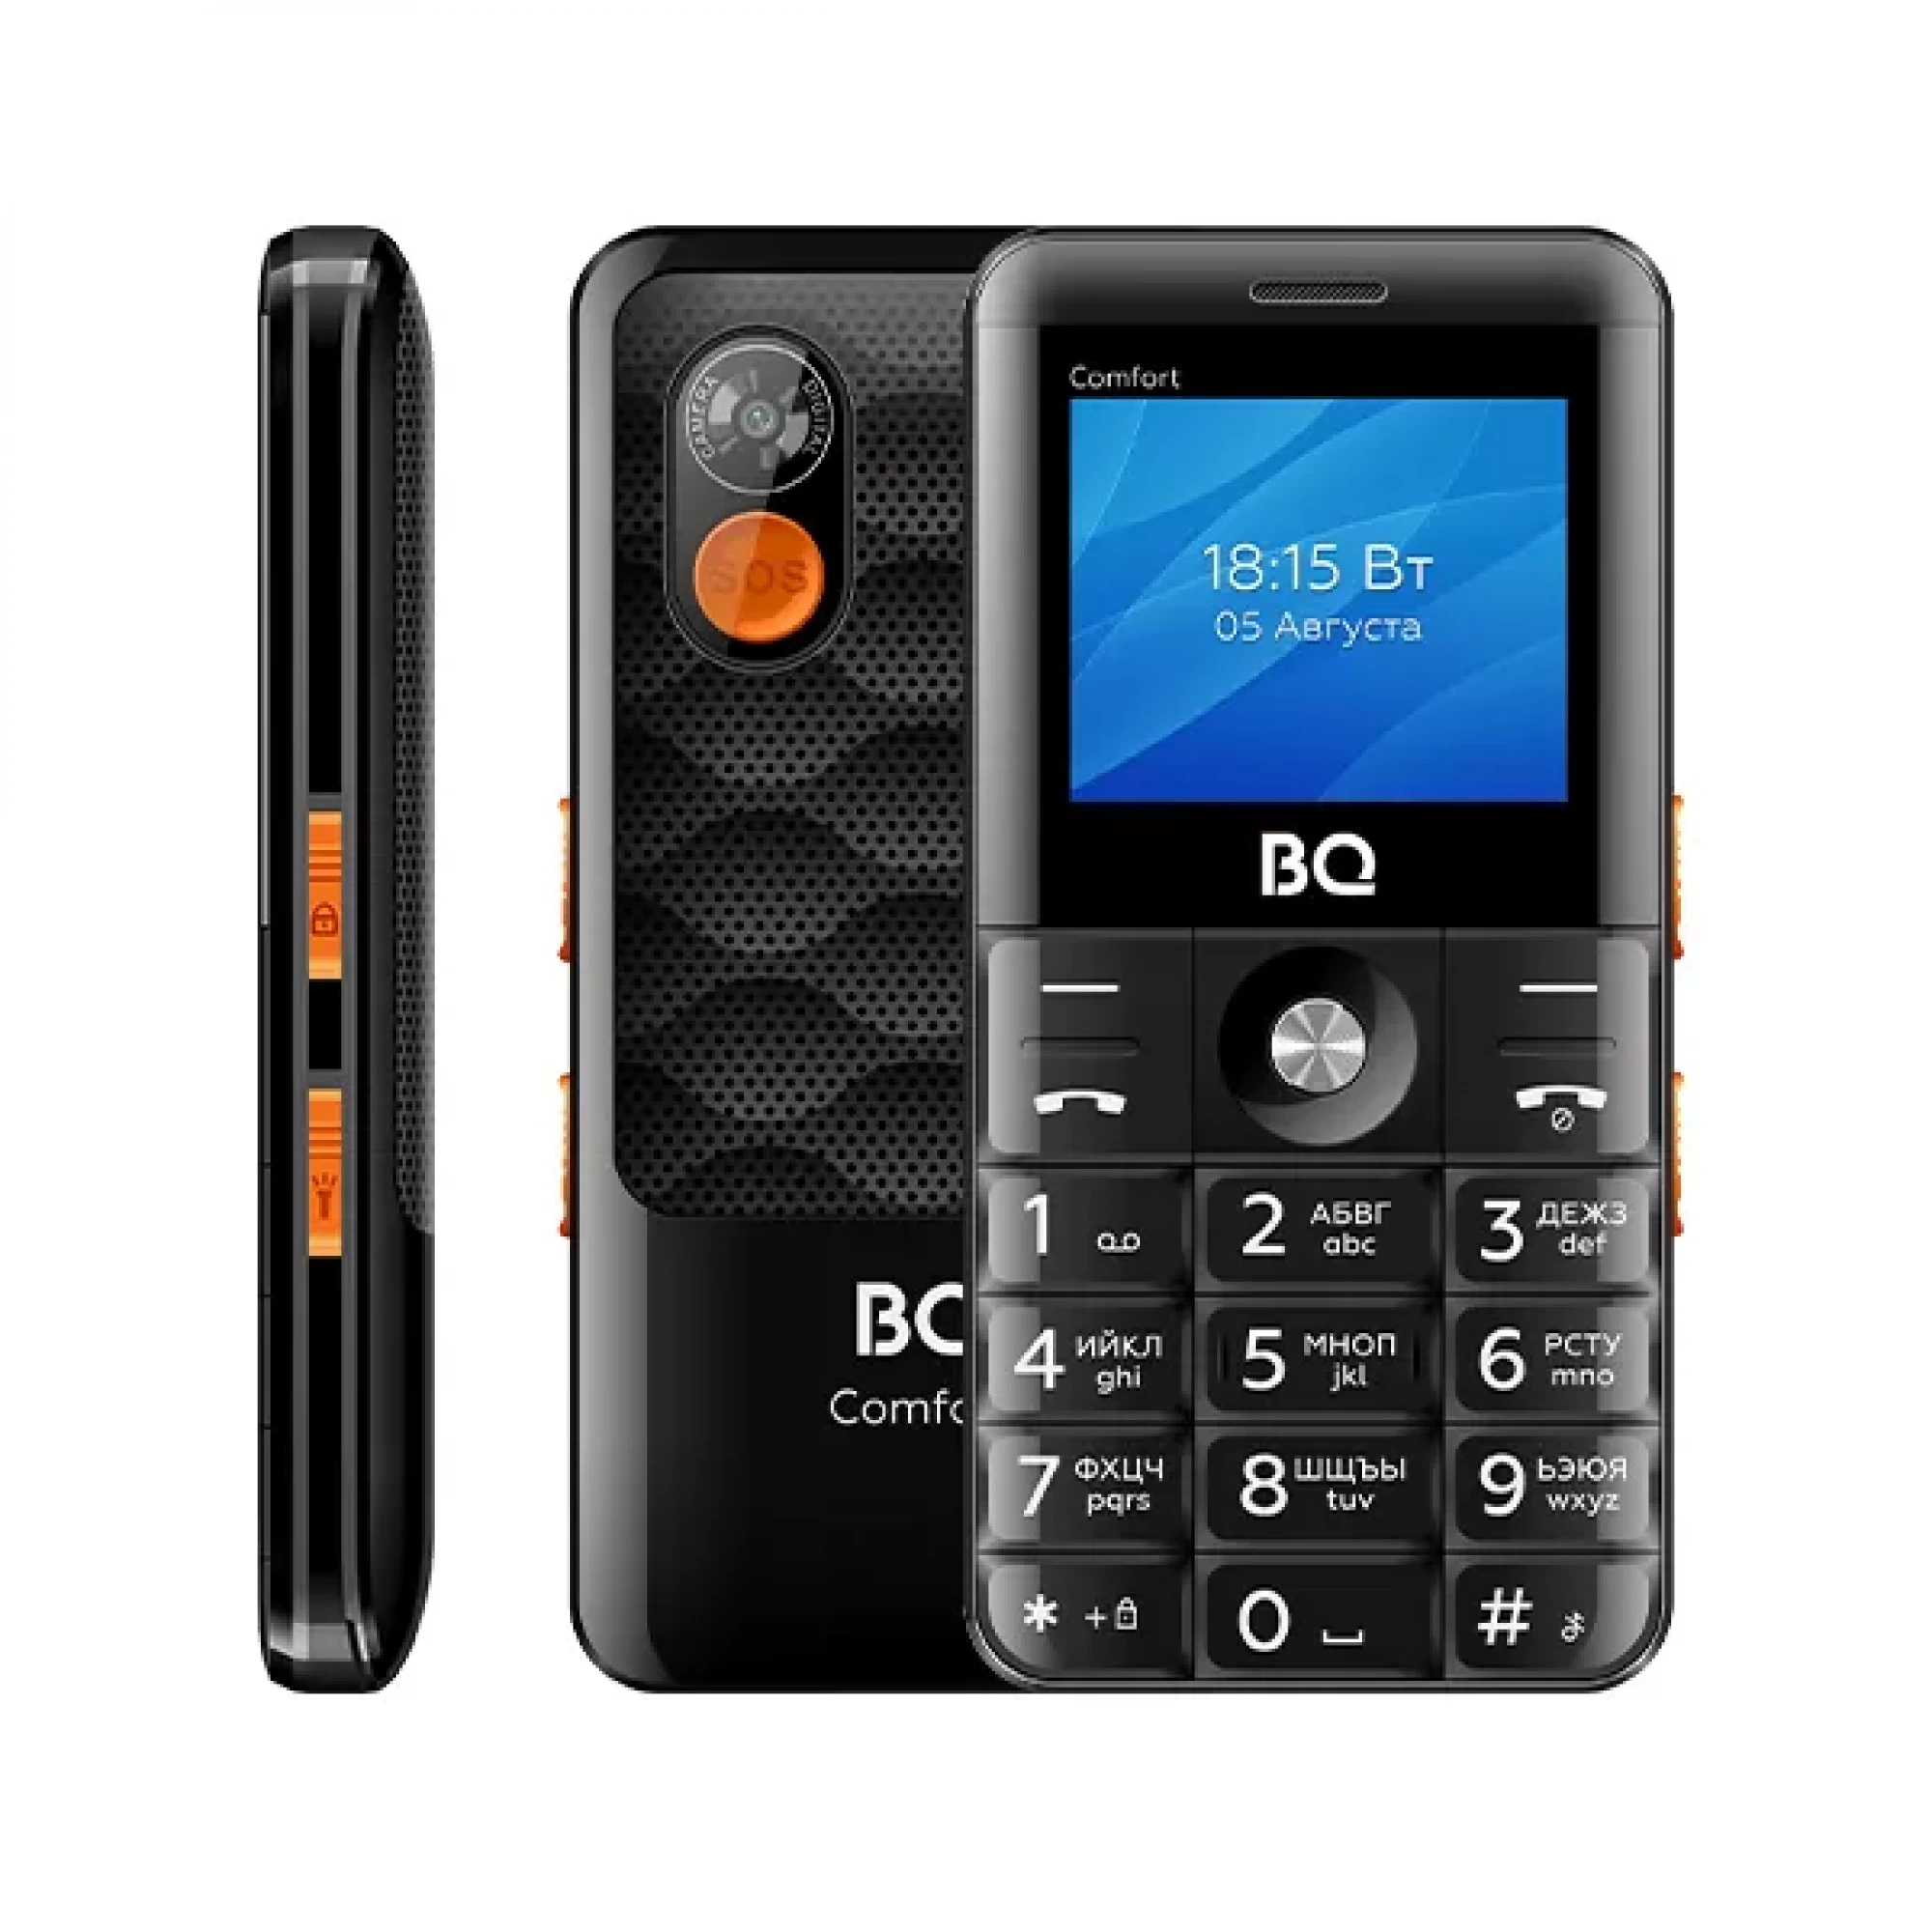 Мобильный телефон BQ BQ-2006 Comfort (черный)